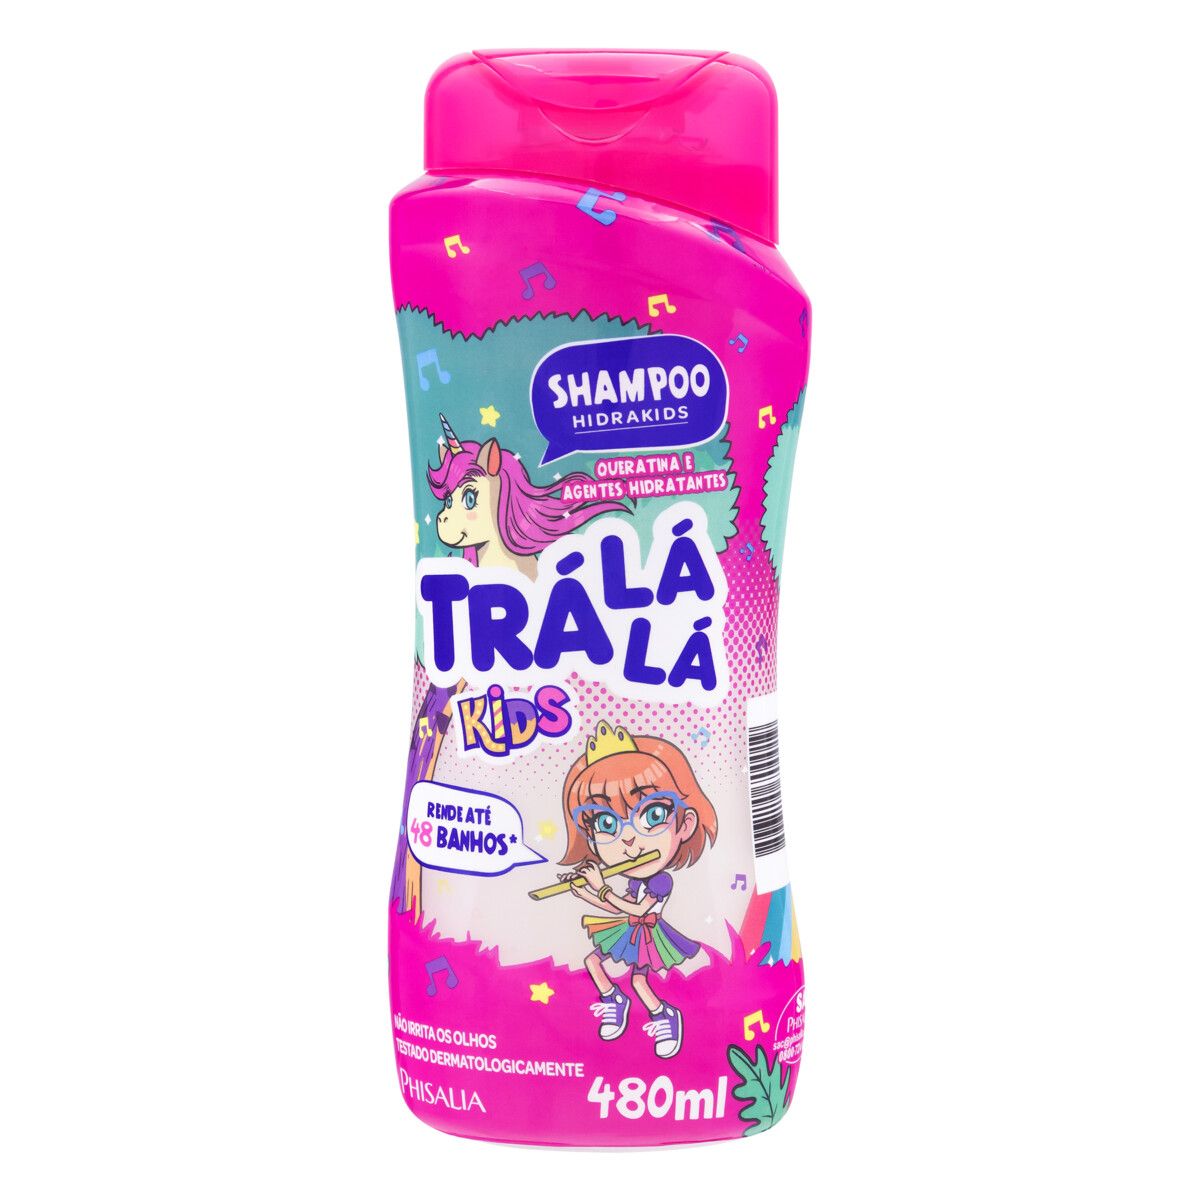 Shampoo Trá Lá Lá Kids Hidrakids Frasco 480ml